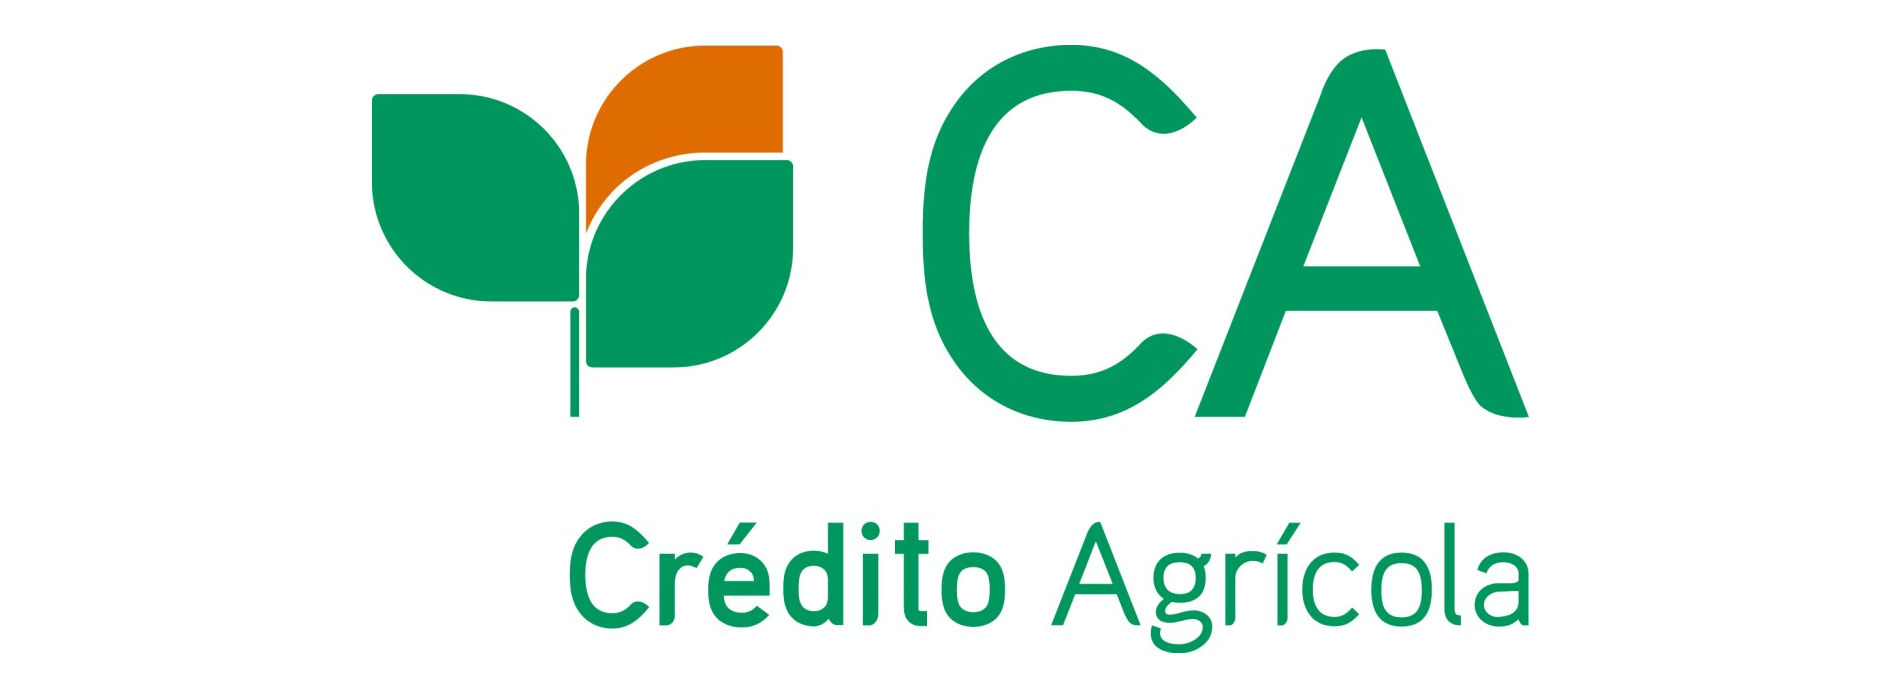 Crédito Agrícola apoia empresas nacionais na maior feira internacional do sector de frutas e hortícolas